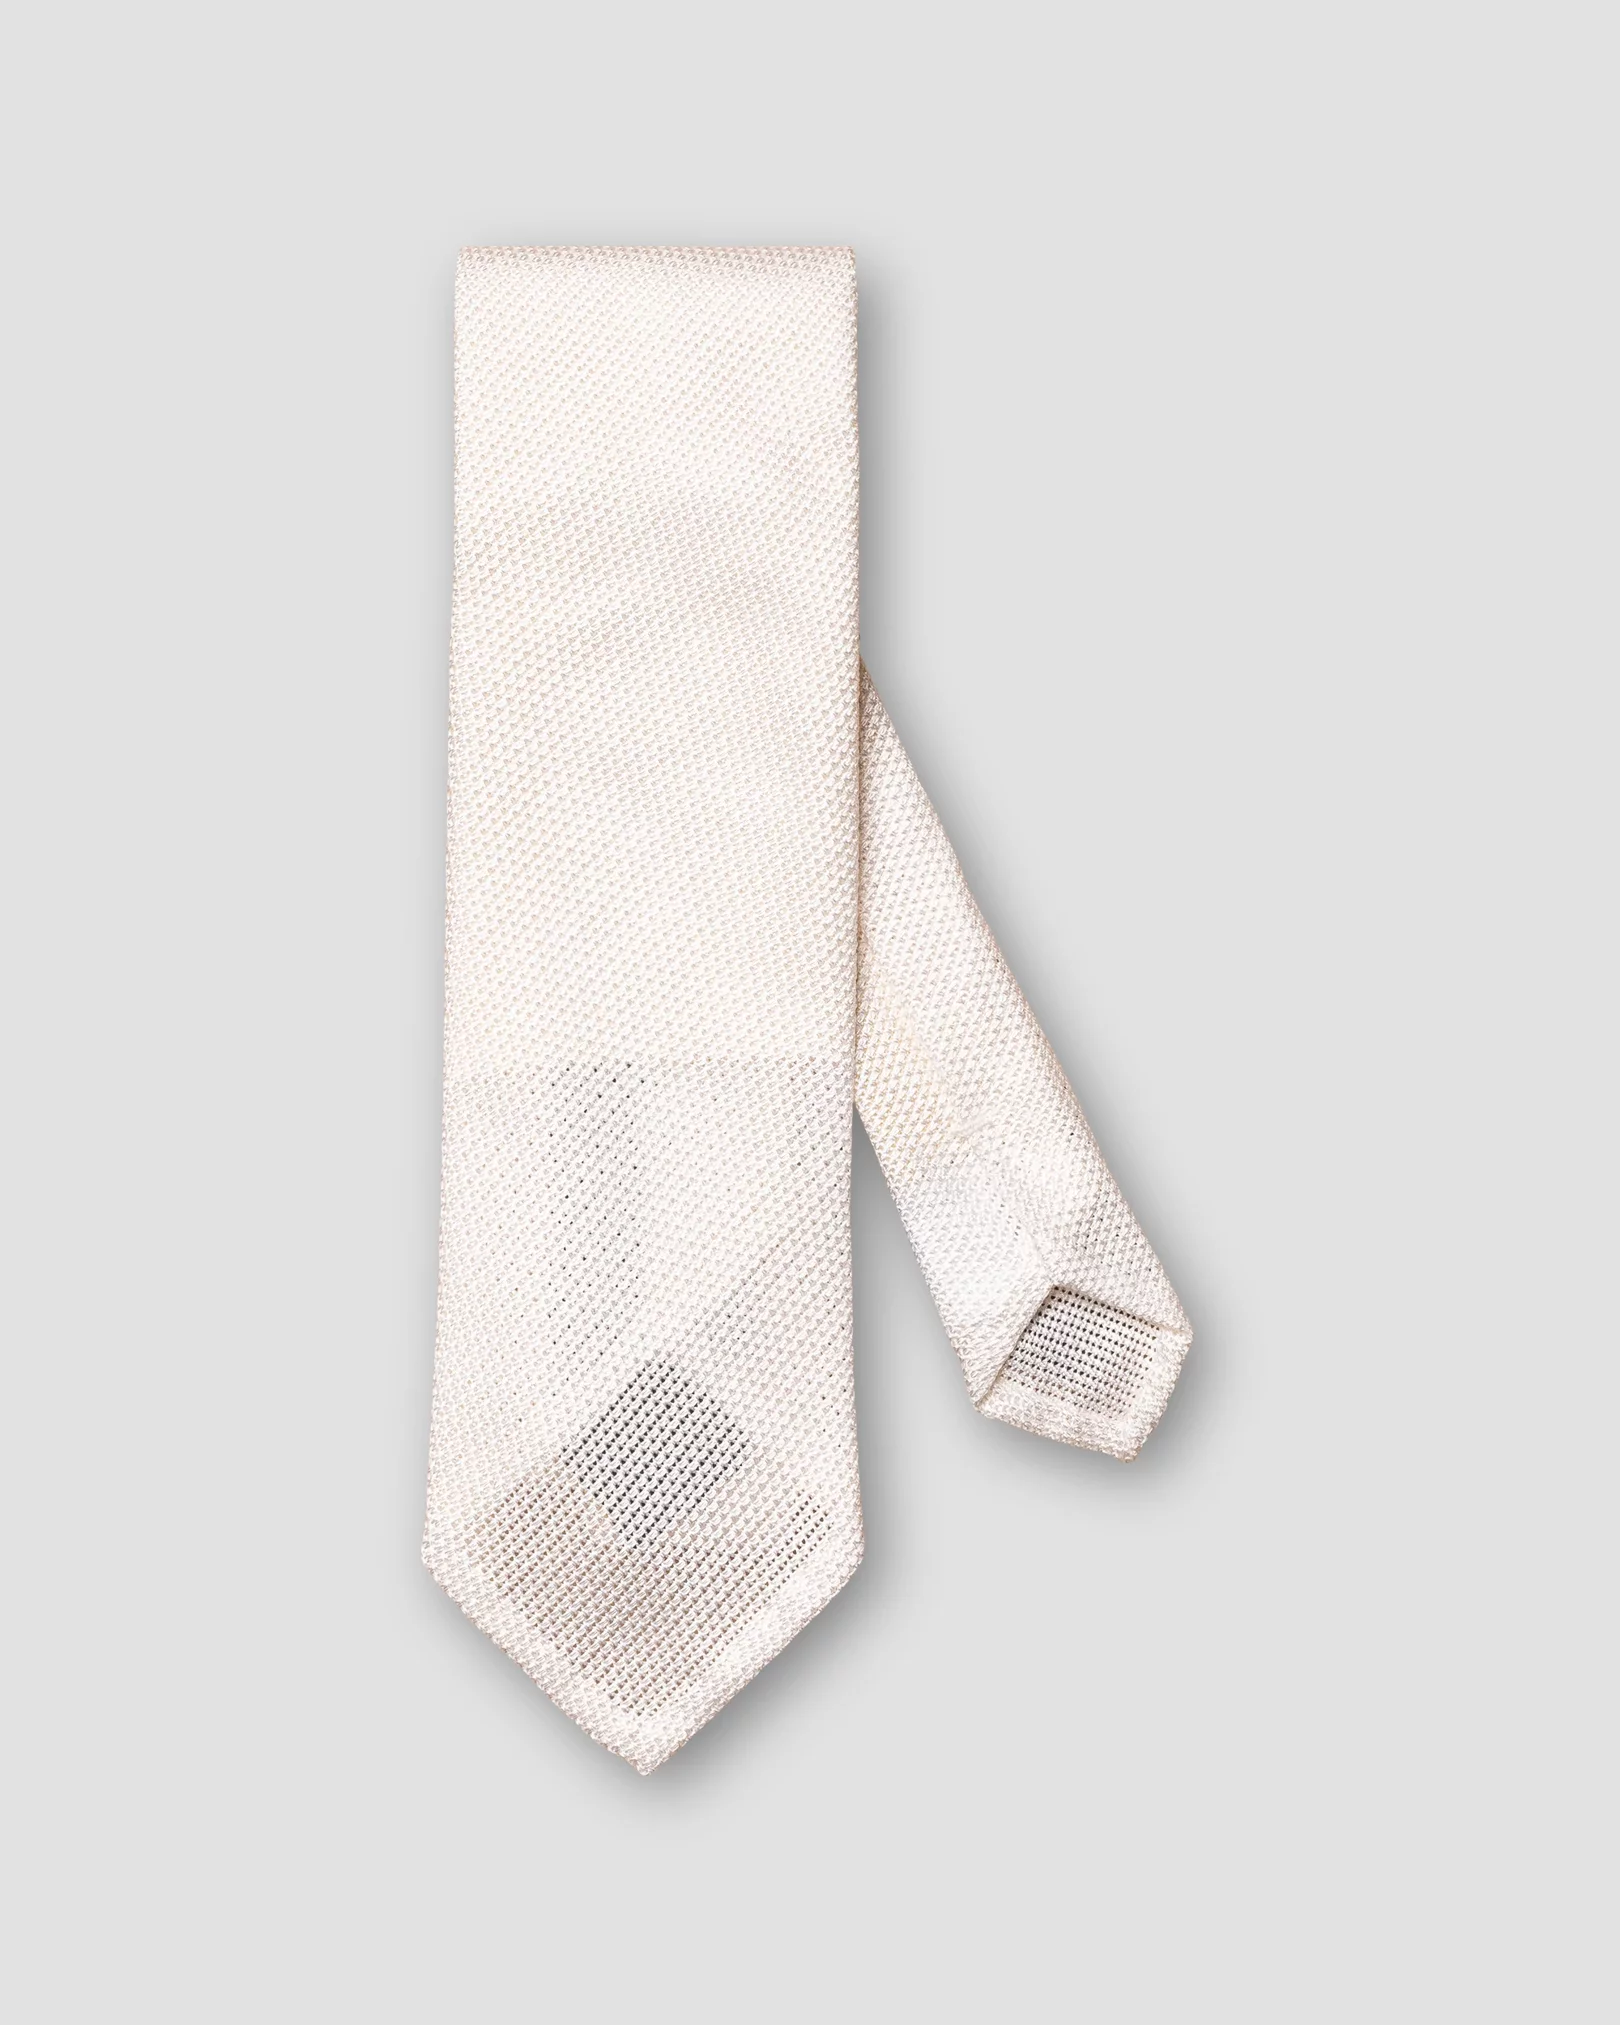 Eton - Weiße handgemachte Krawatte aus Garza Fina-Grenadine